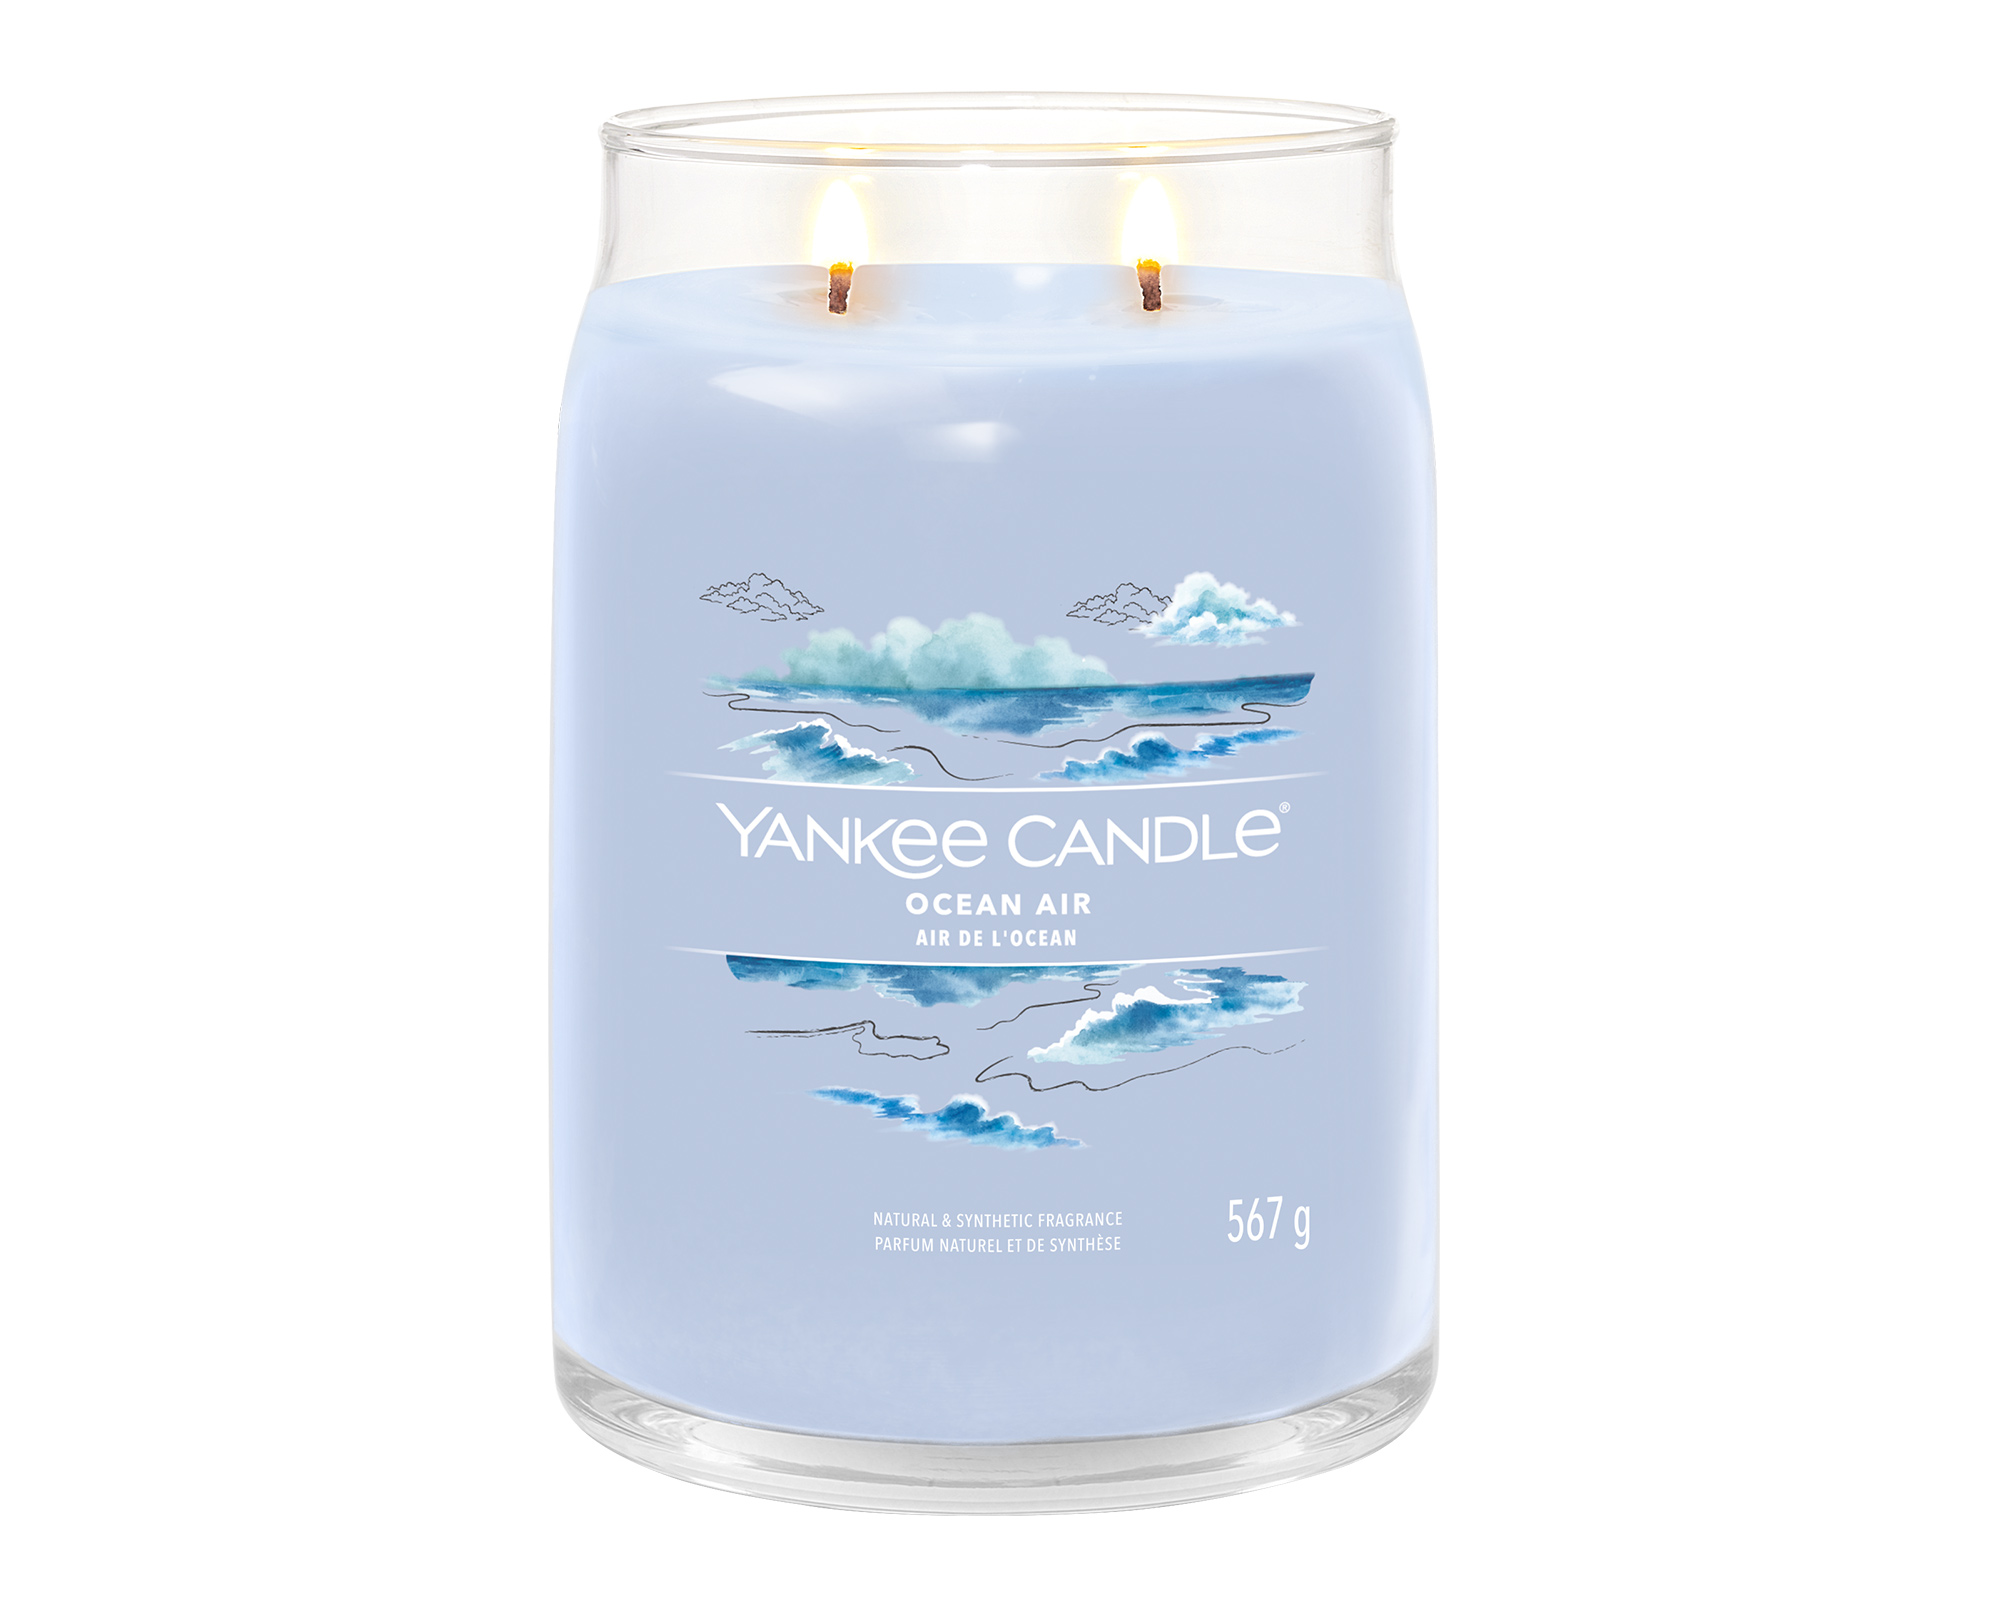 Giara Candela Grande Signature Ocean Air - Yankee Candle - FloralGarden